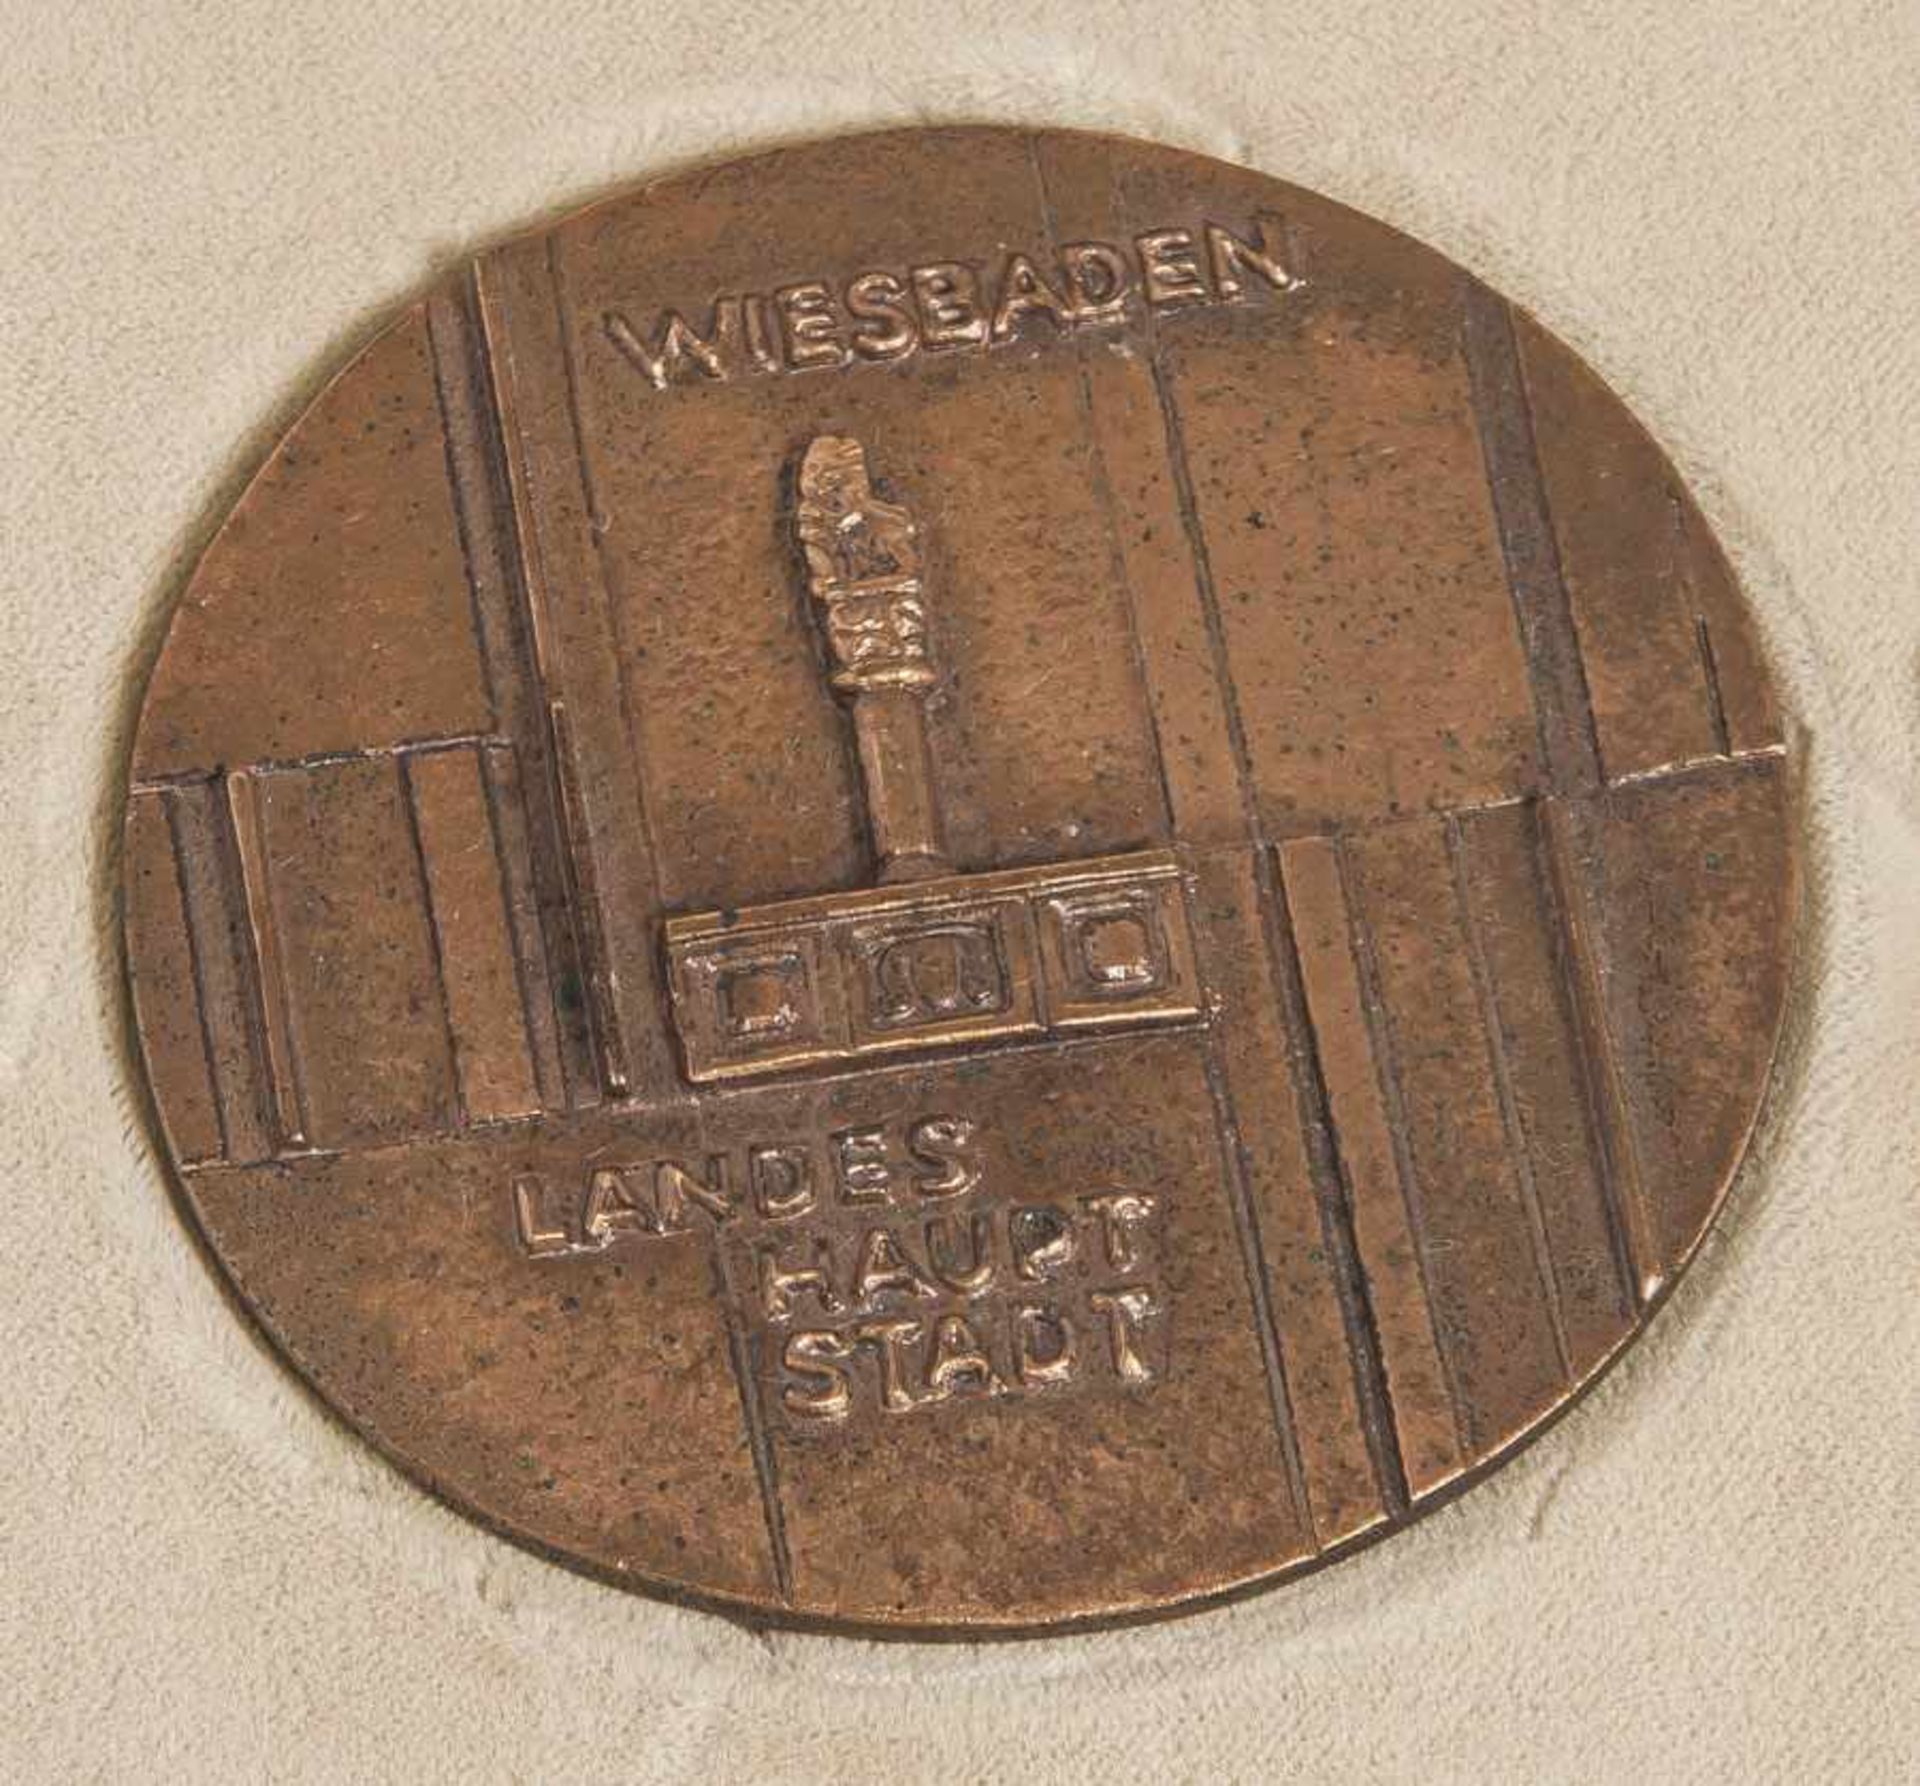 Verdienstmedaille des Landes Hessen, Bronze, "für besondere Verdienste", Landeshauptstadt